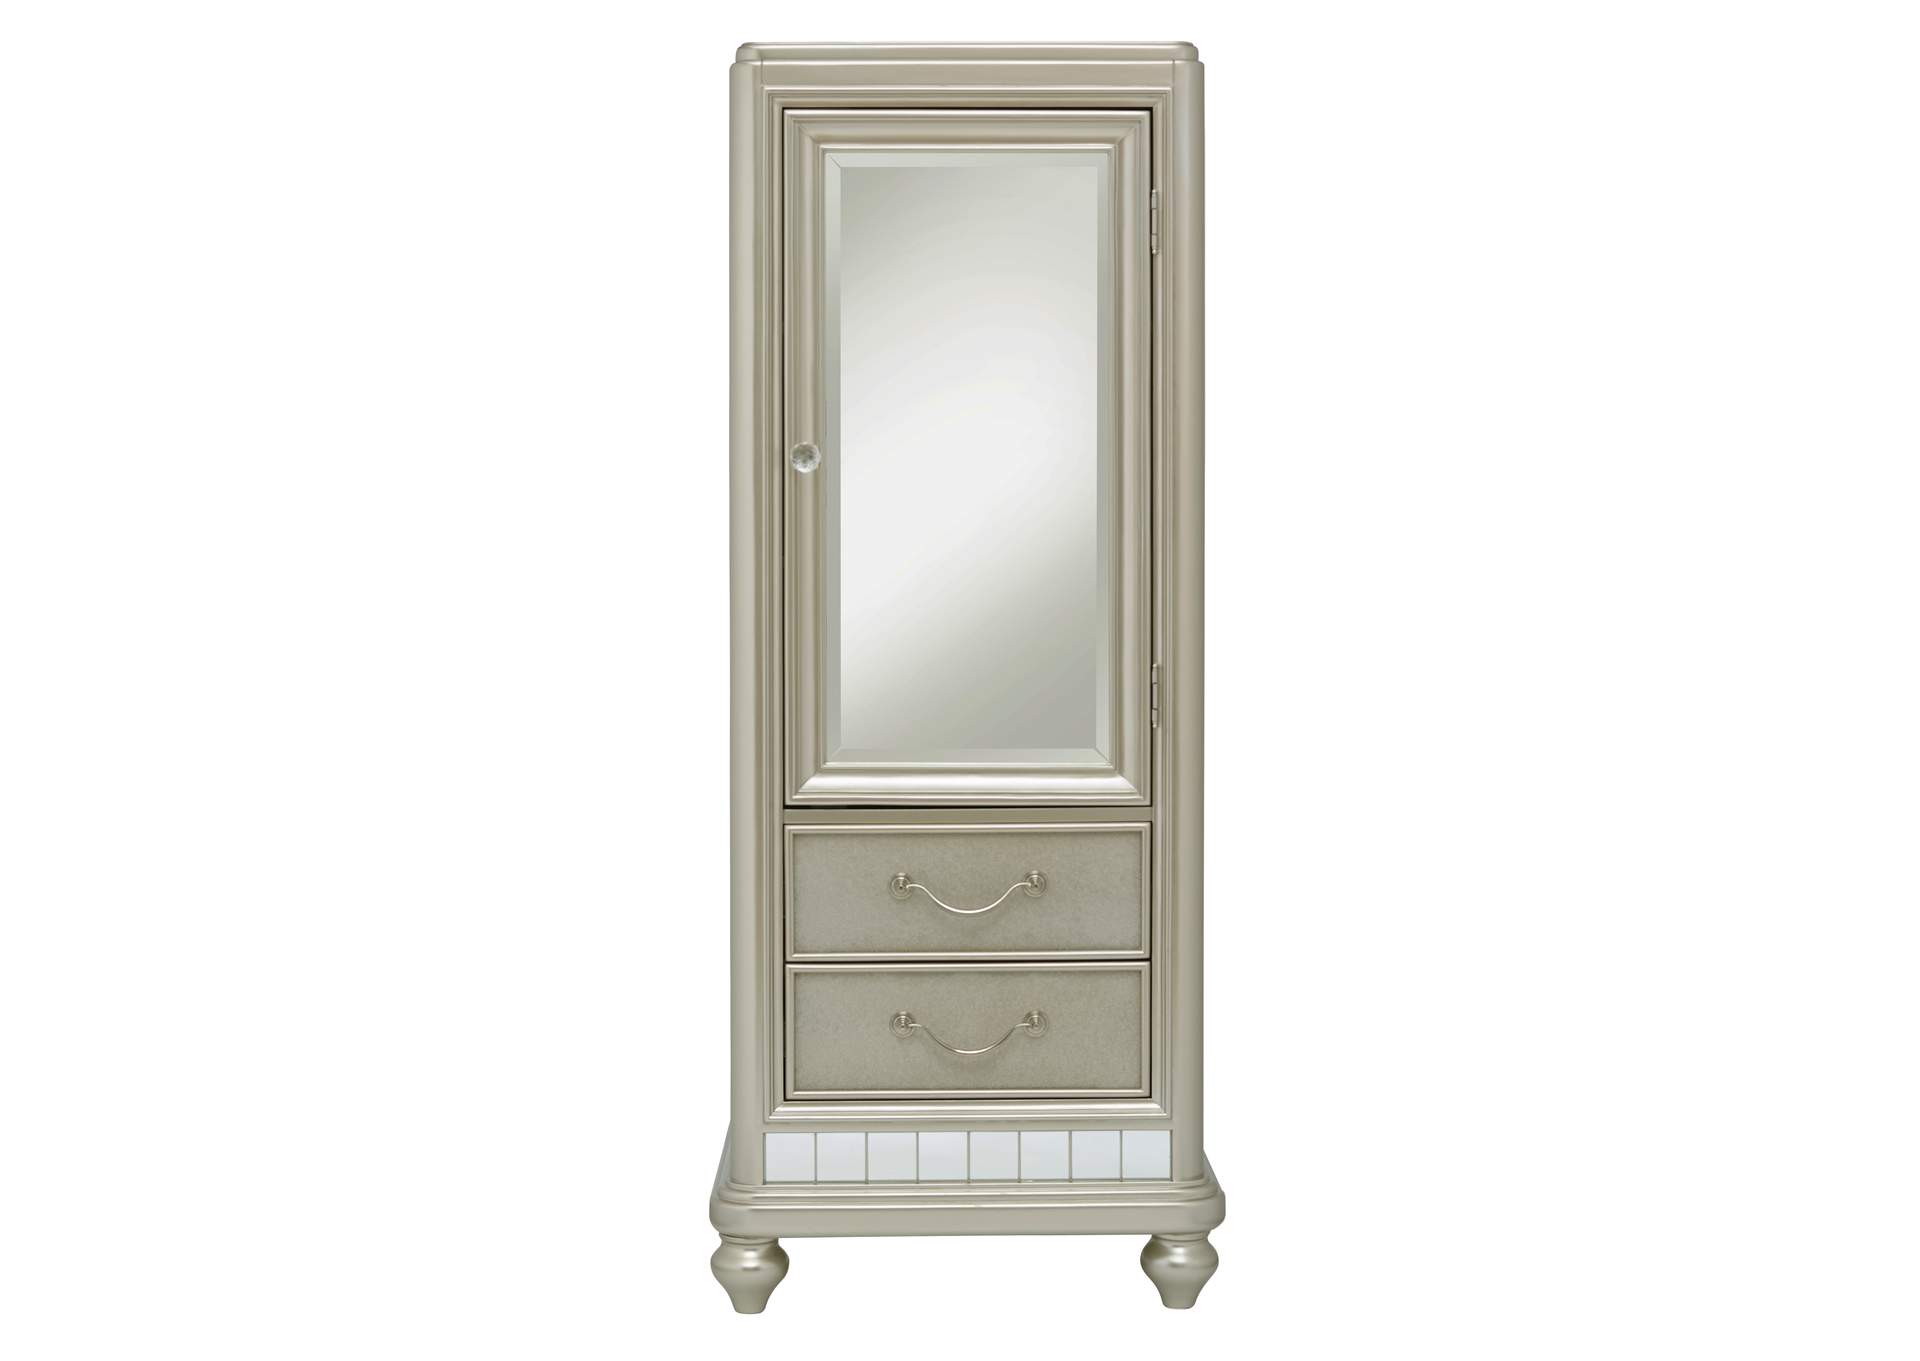 Li'l Diva Mirror Door Wardrobe,Pulaski Furniture